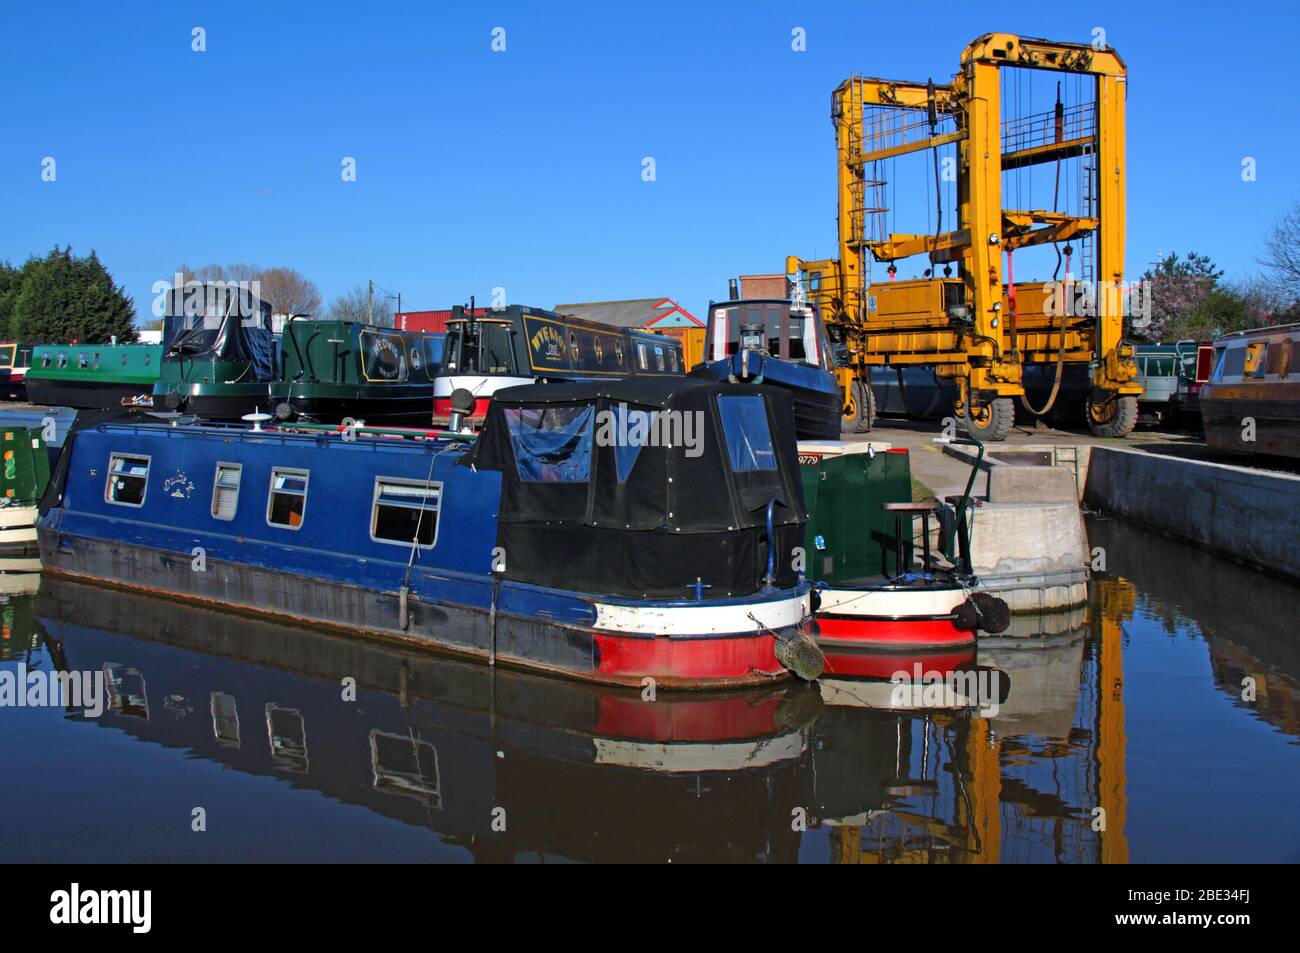 Canal, bateaux étroits et pont roulant à Park Farm Marina Limited, Wincham Wharf, Lostock Gralam, Northwich, Cheshire, Angleterre, Royaume-Uni, Banque D'Images